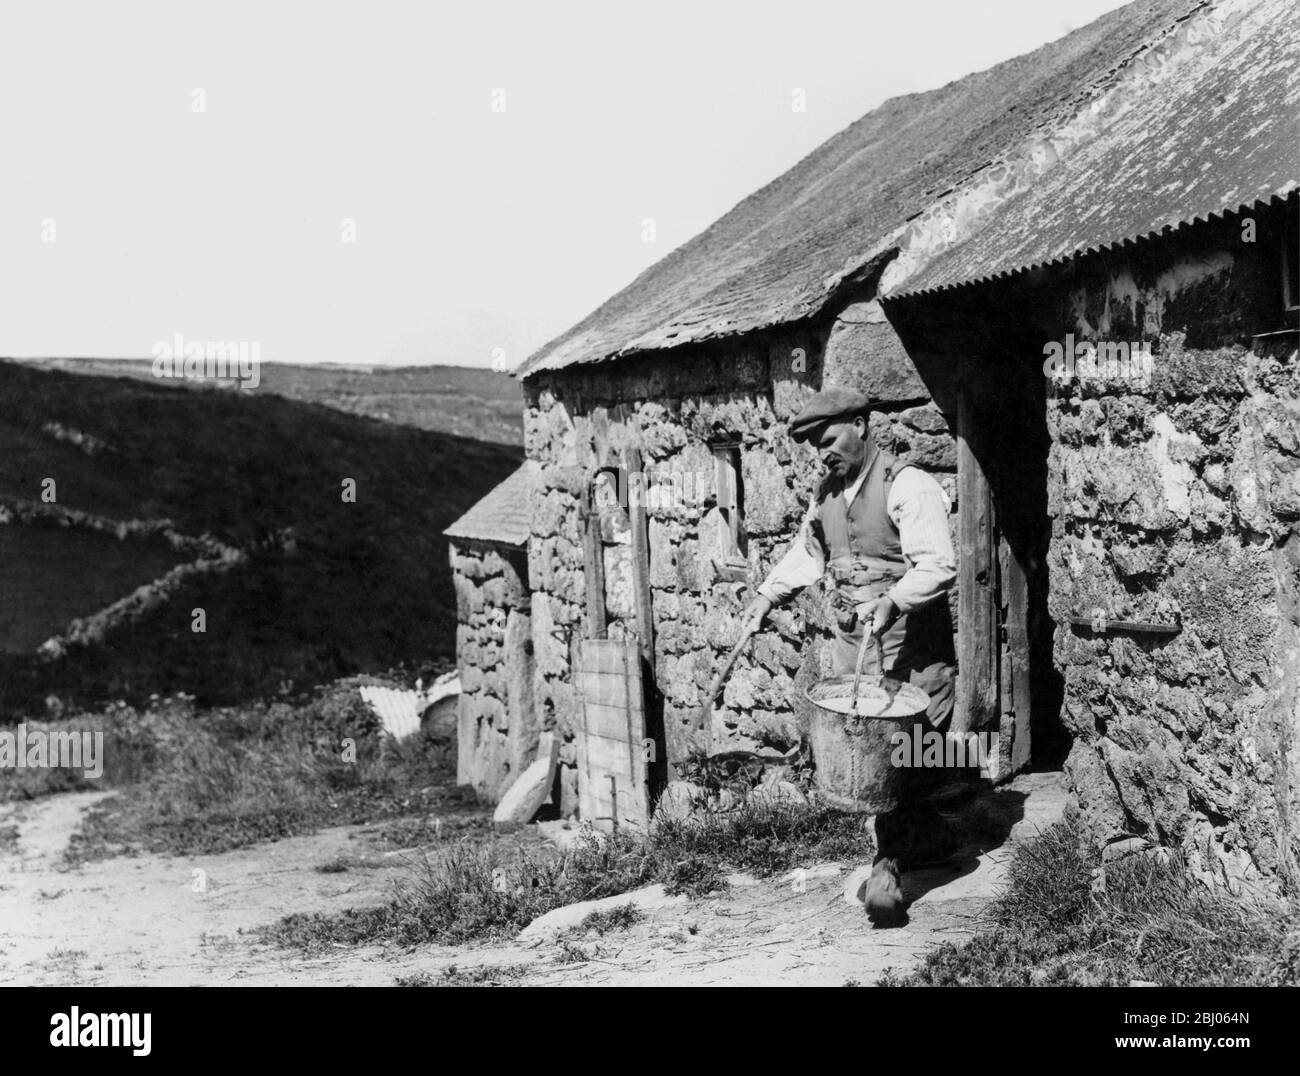 Ein Hügelbauer, der einen Eimer Schweineblauch herausbringt, Cornwall 1936. - die dreißiger Jahre waren eine schlechte Zeit für die englische Agrarkultur; viele Schriftsteller kommentierten das heruntergefallene Gebäude und verfallene, von Unkraut befallene Felder. Stockfoto